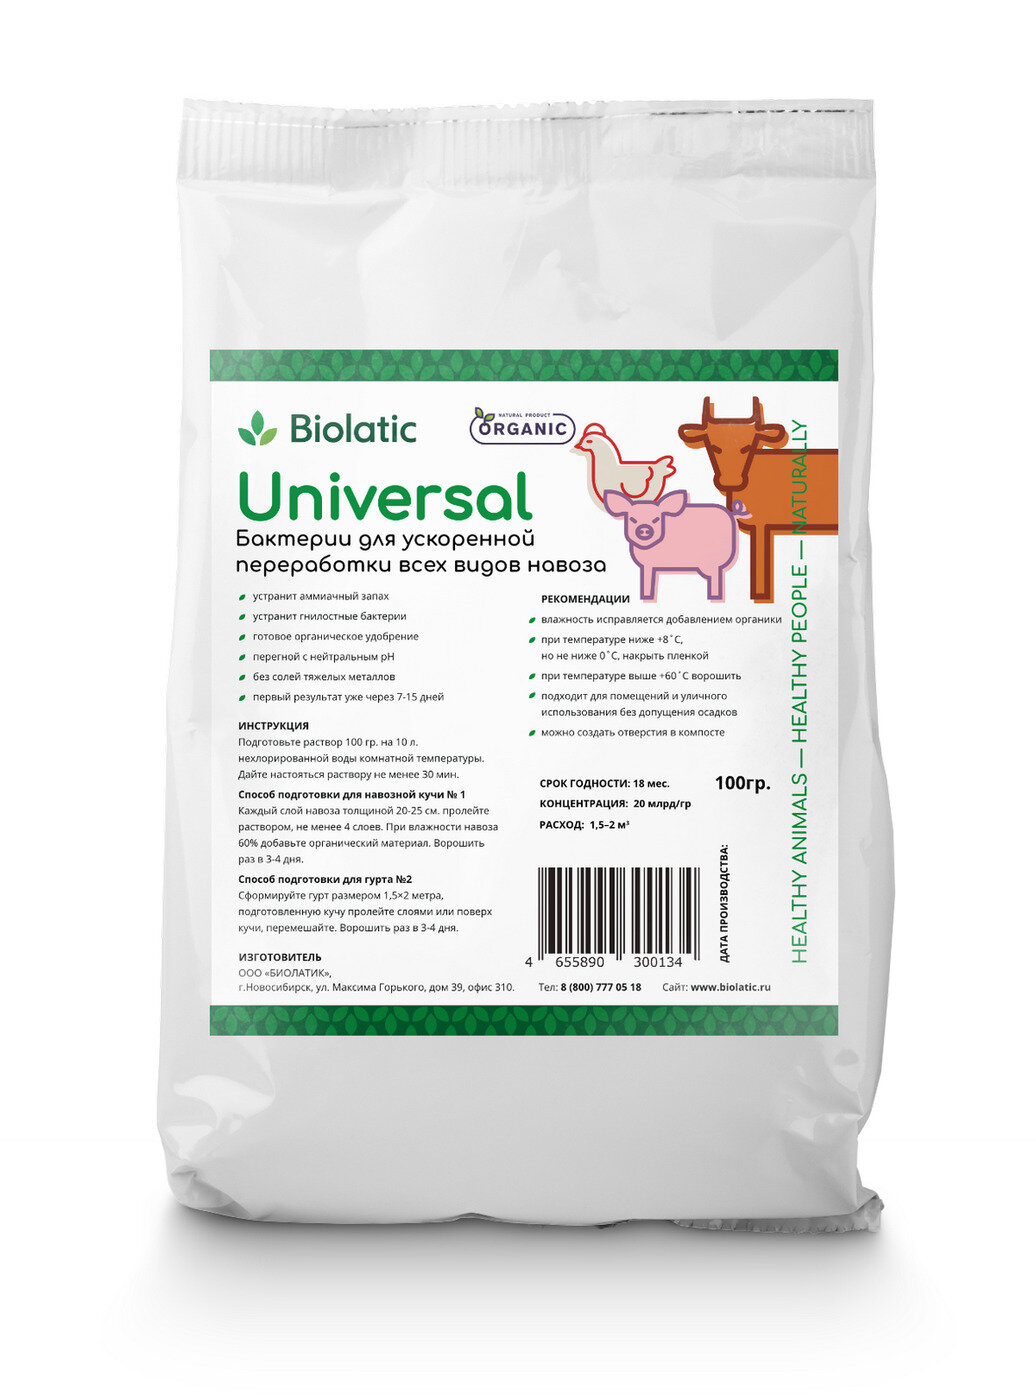 Биолатик Универсал (Biolatic Universal) (01 кг) универсальные бактерии для переработки навоза и помёта